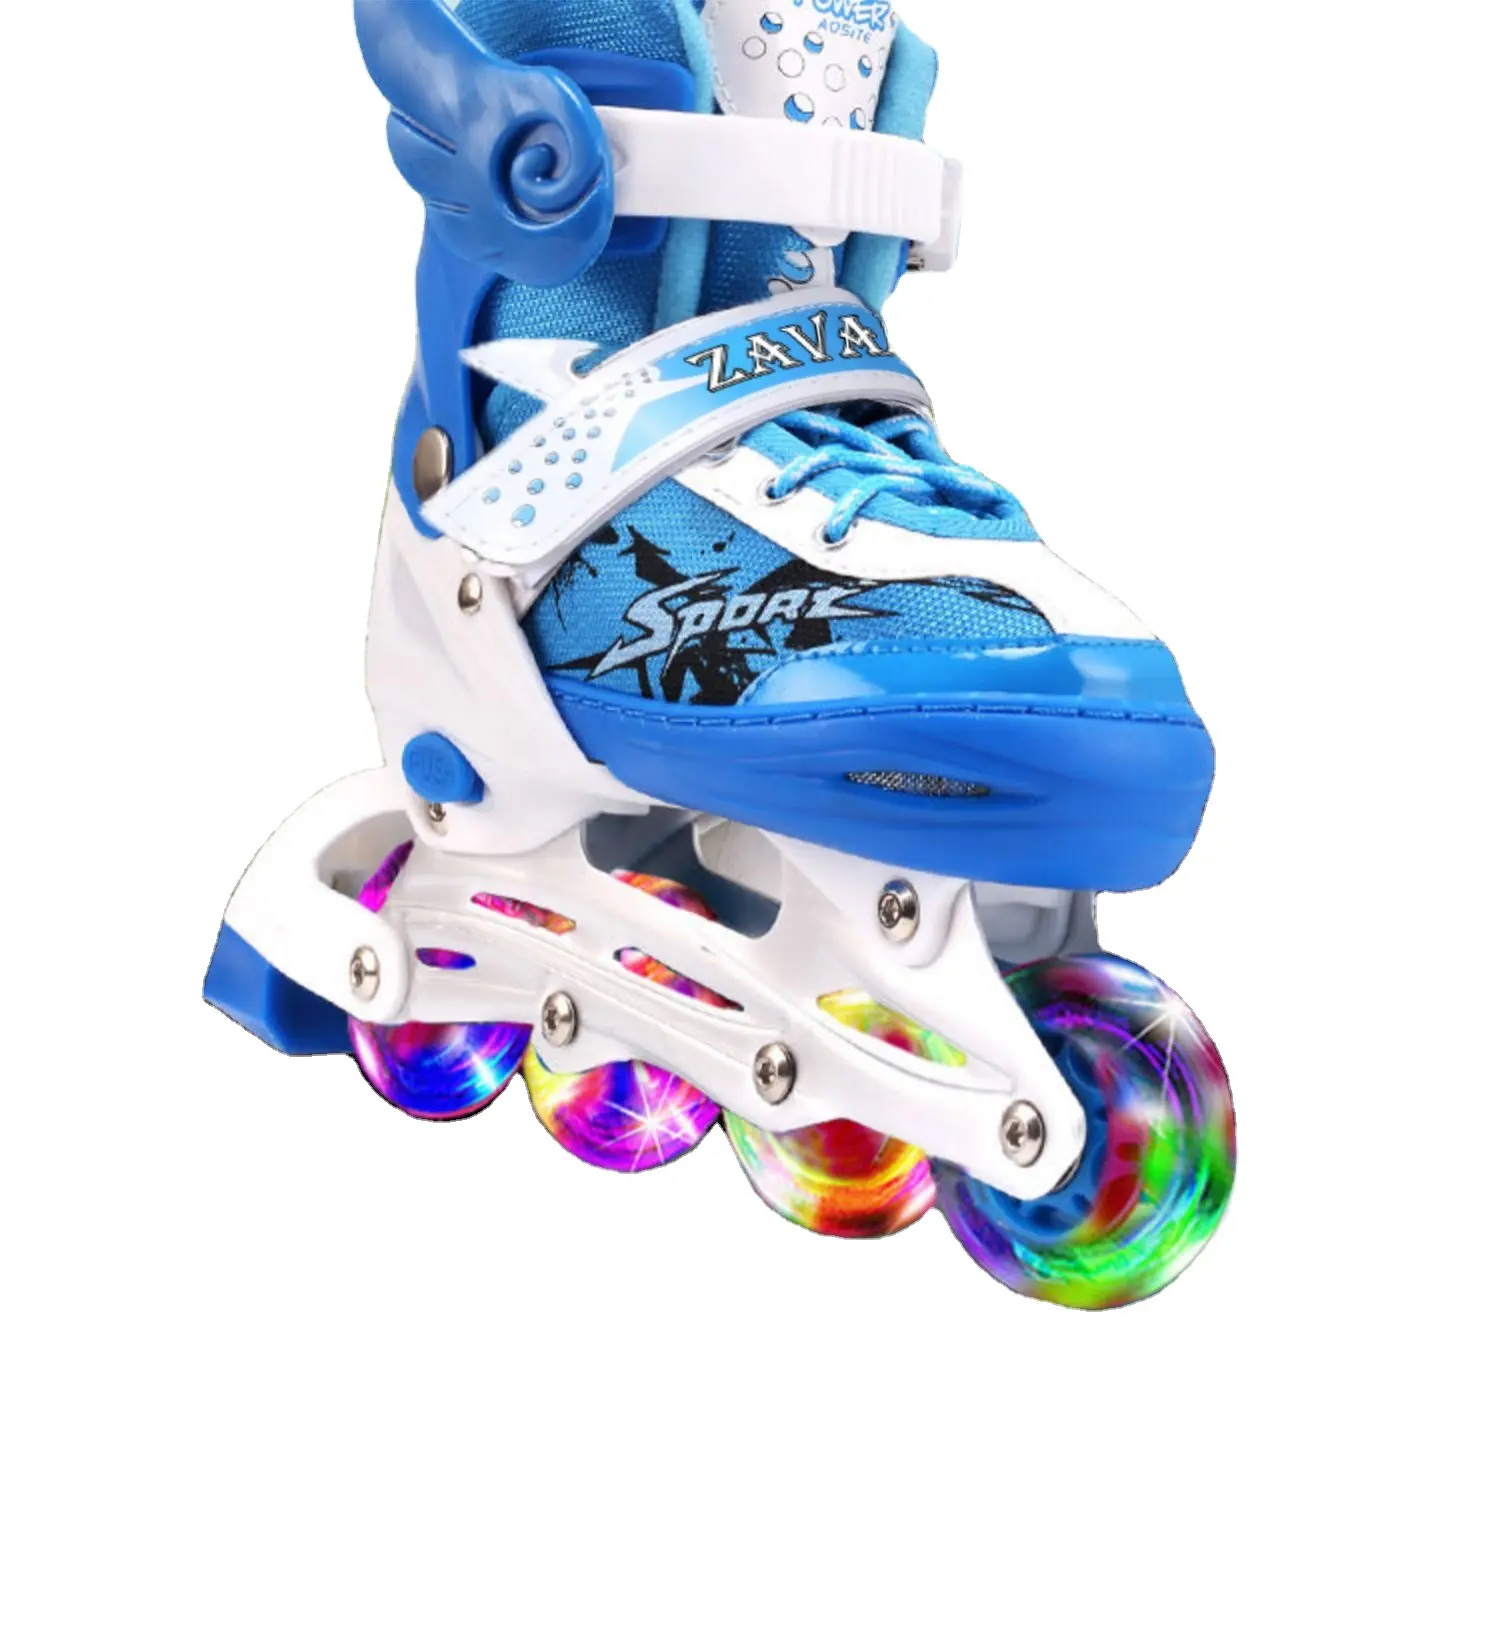 Venta caliente de alta calidad lindo ajustable iluminar hasta 4 ruedas de color rosa azul patines en línea zapatos de patines para niños niñas